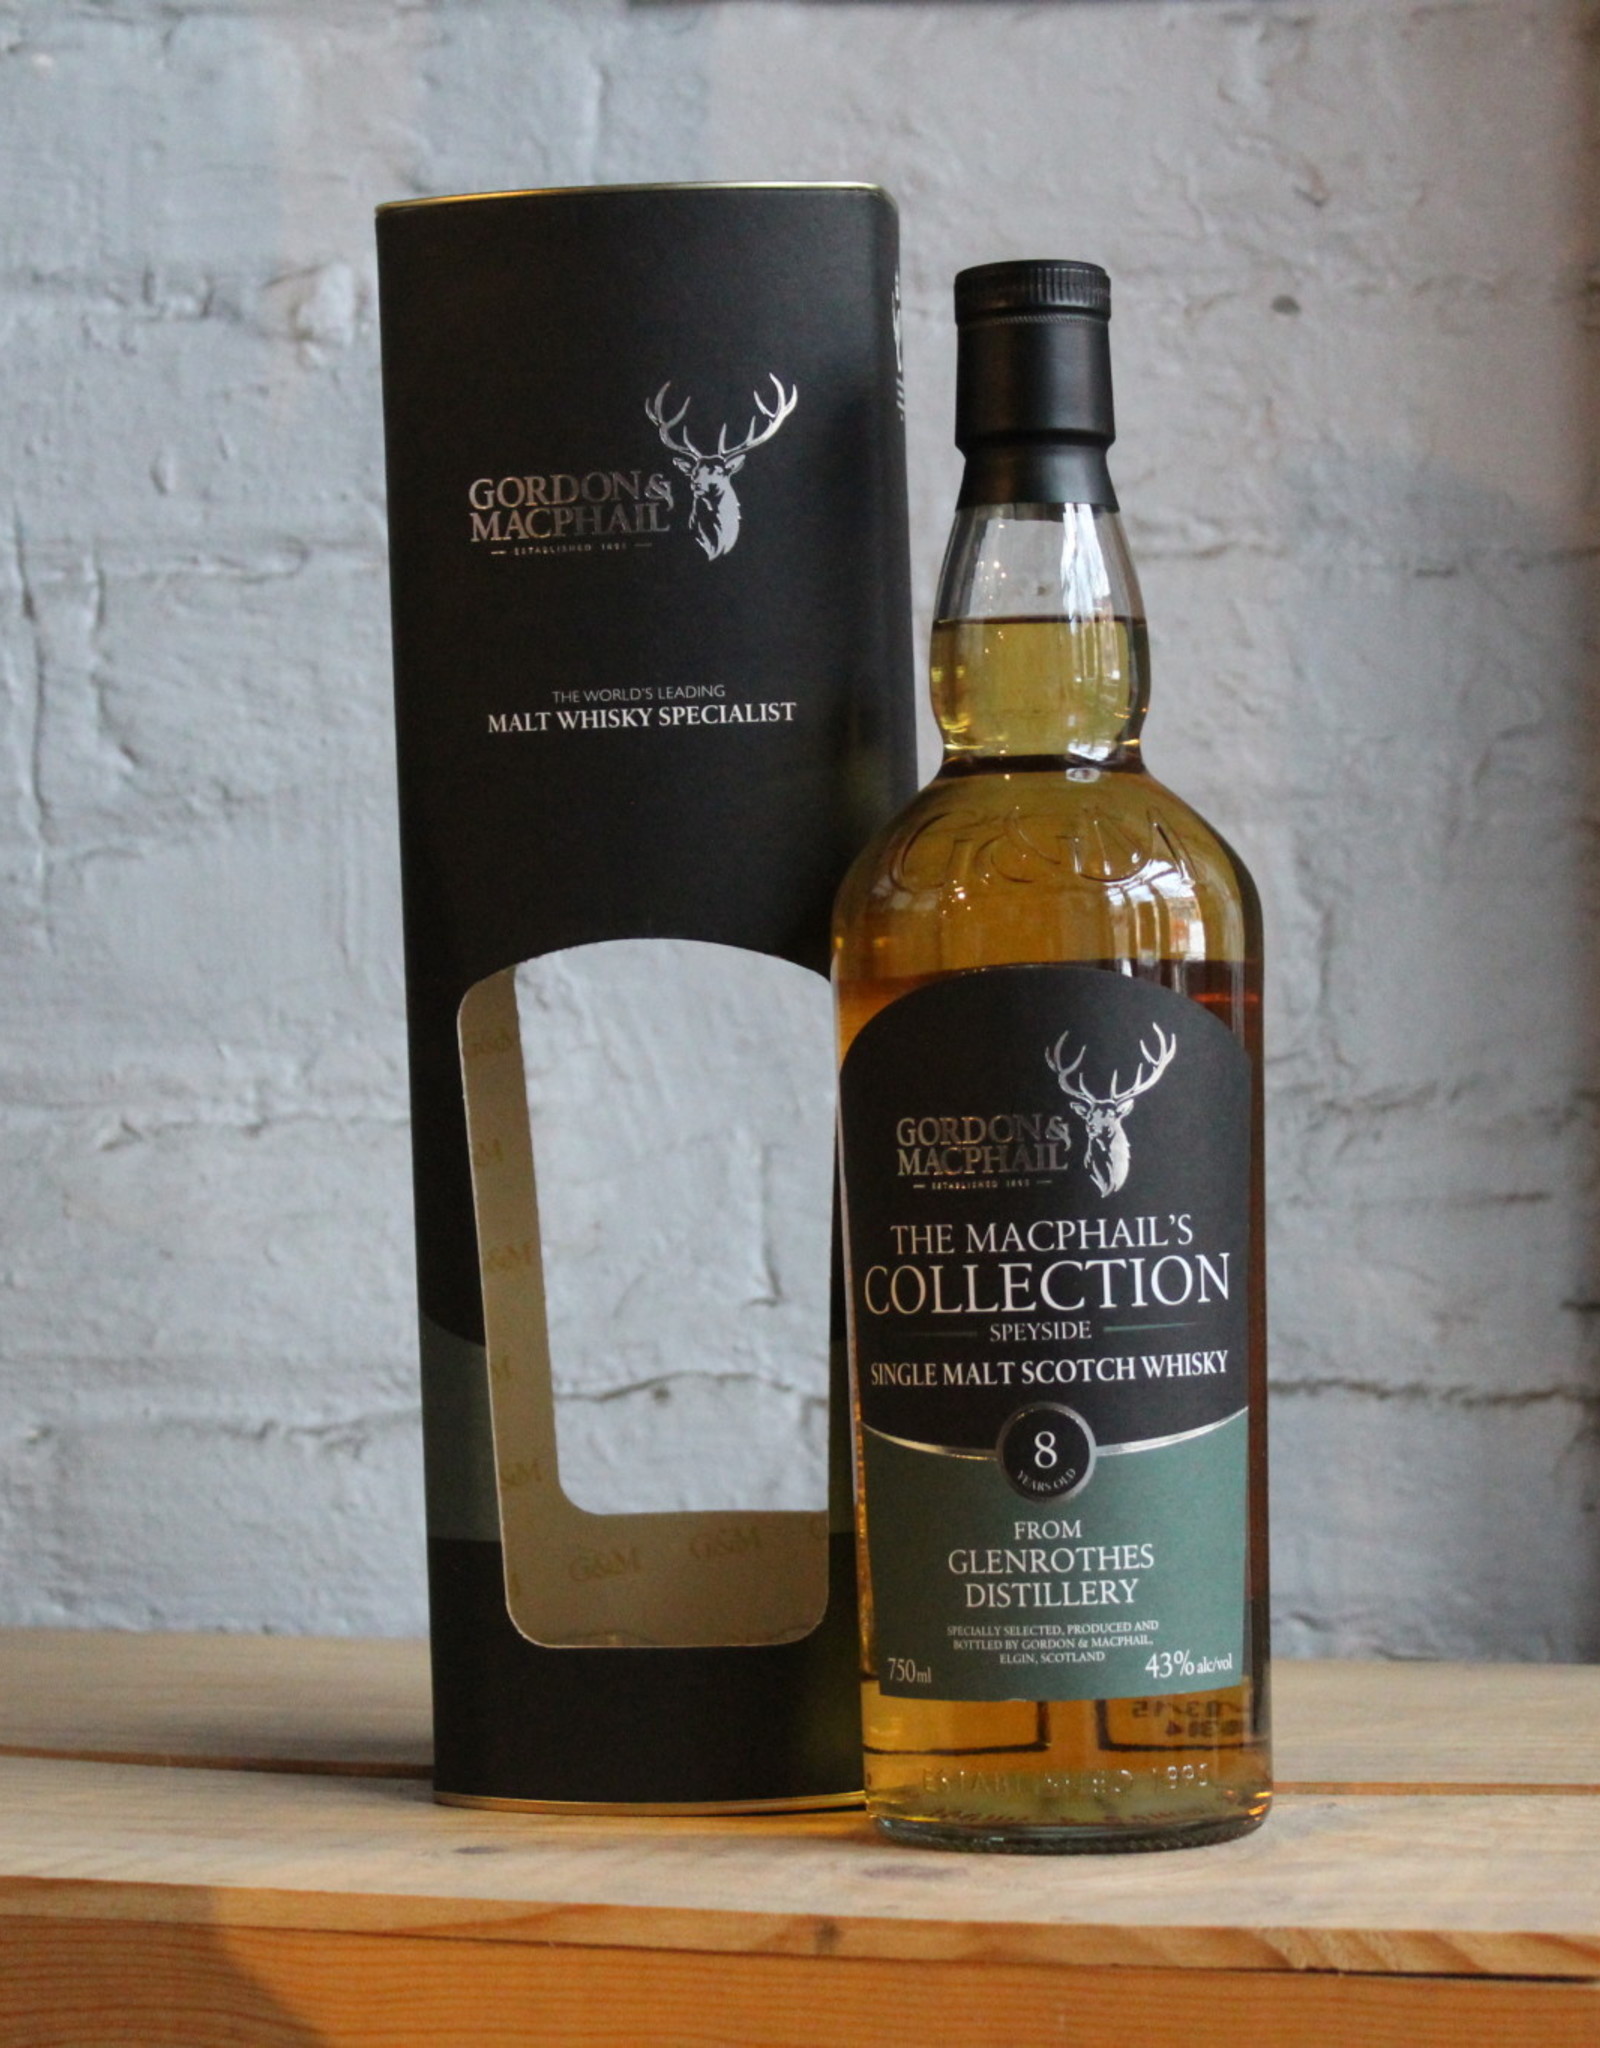 Gordon & Macphail Glenrothes 8yr Single Malt Scotch Whisky - Speyside, Scotland (750ml)